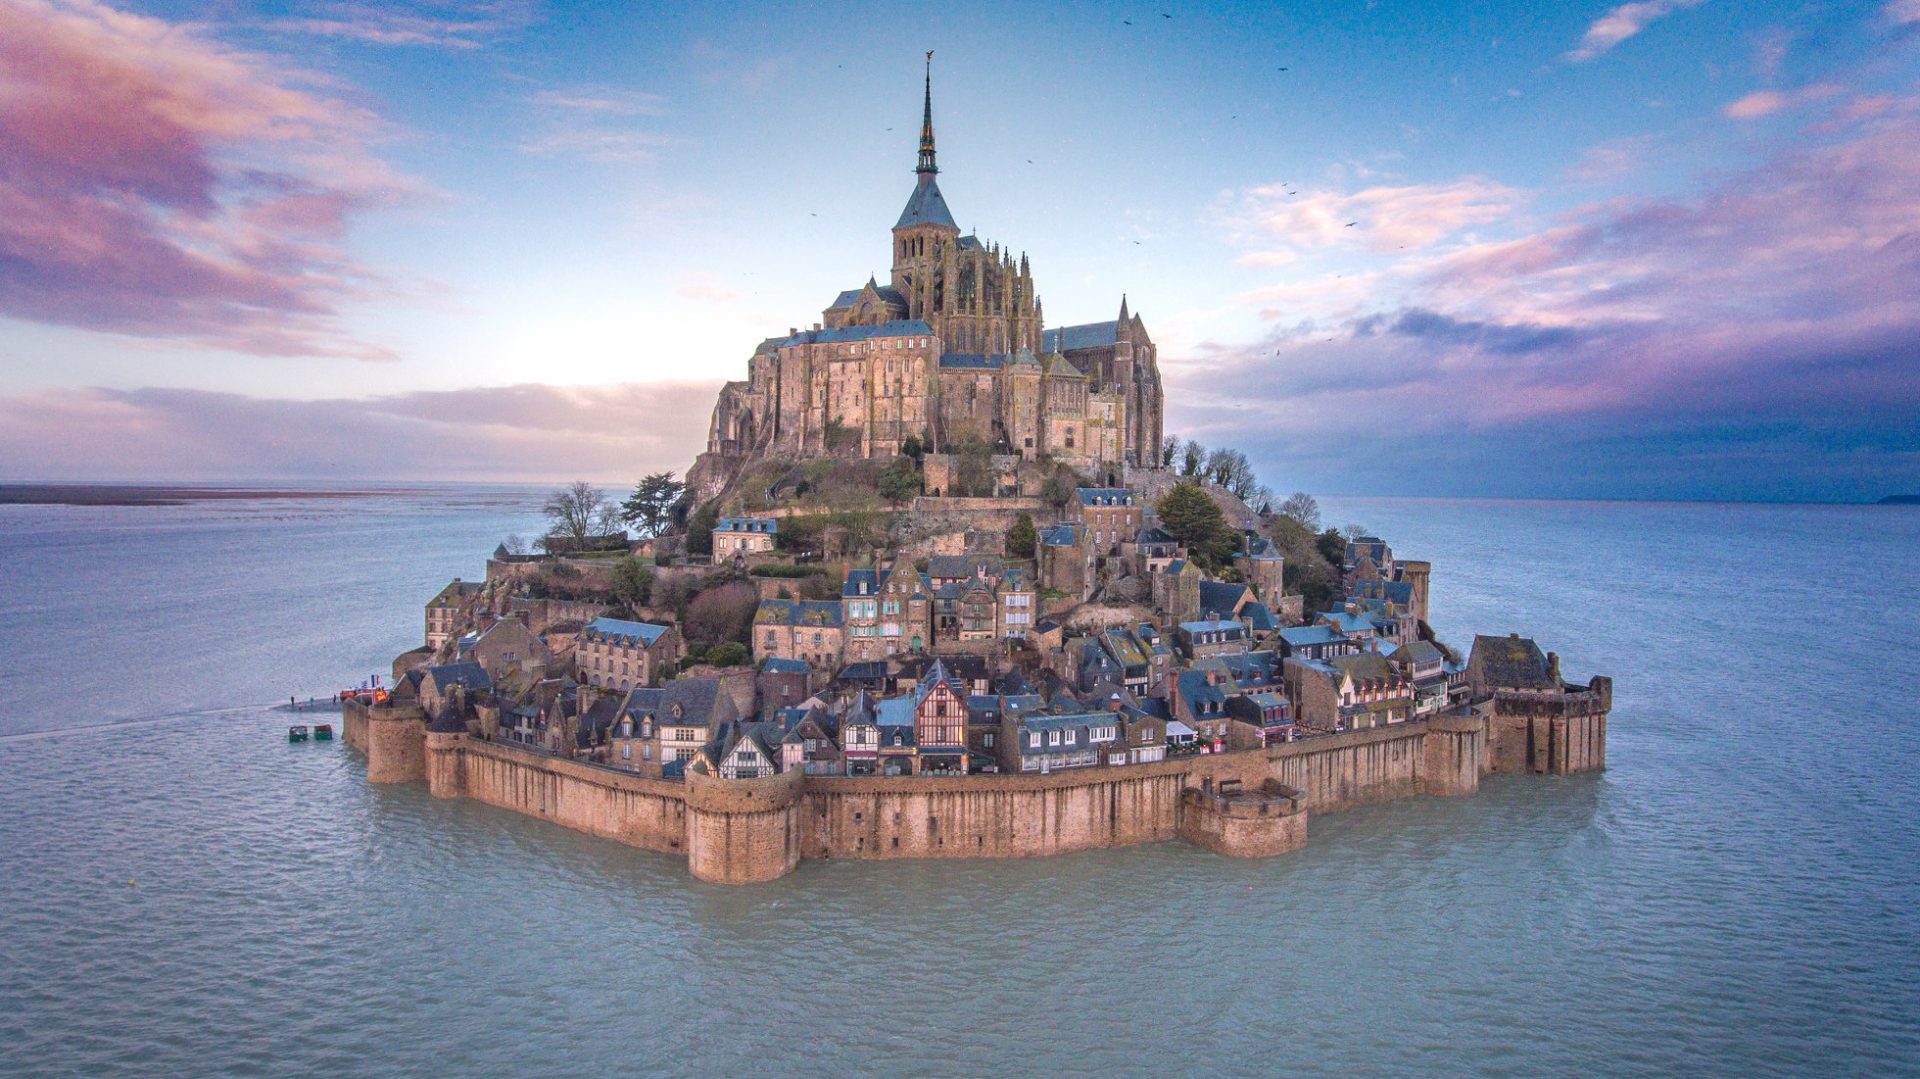 Lâu đài "bất khả xâm phạm" và những bí ẩn chưa được giải mã ở Pháp - 2